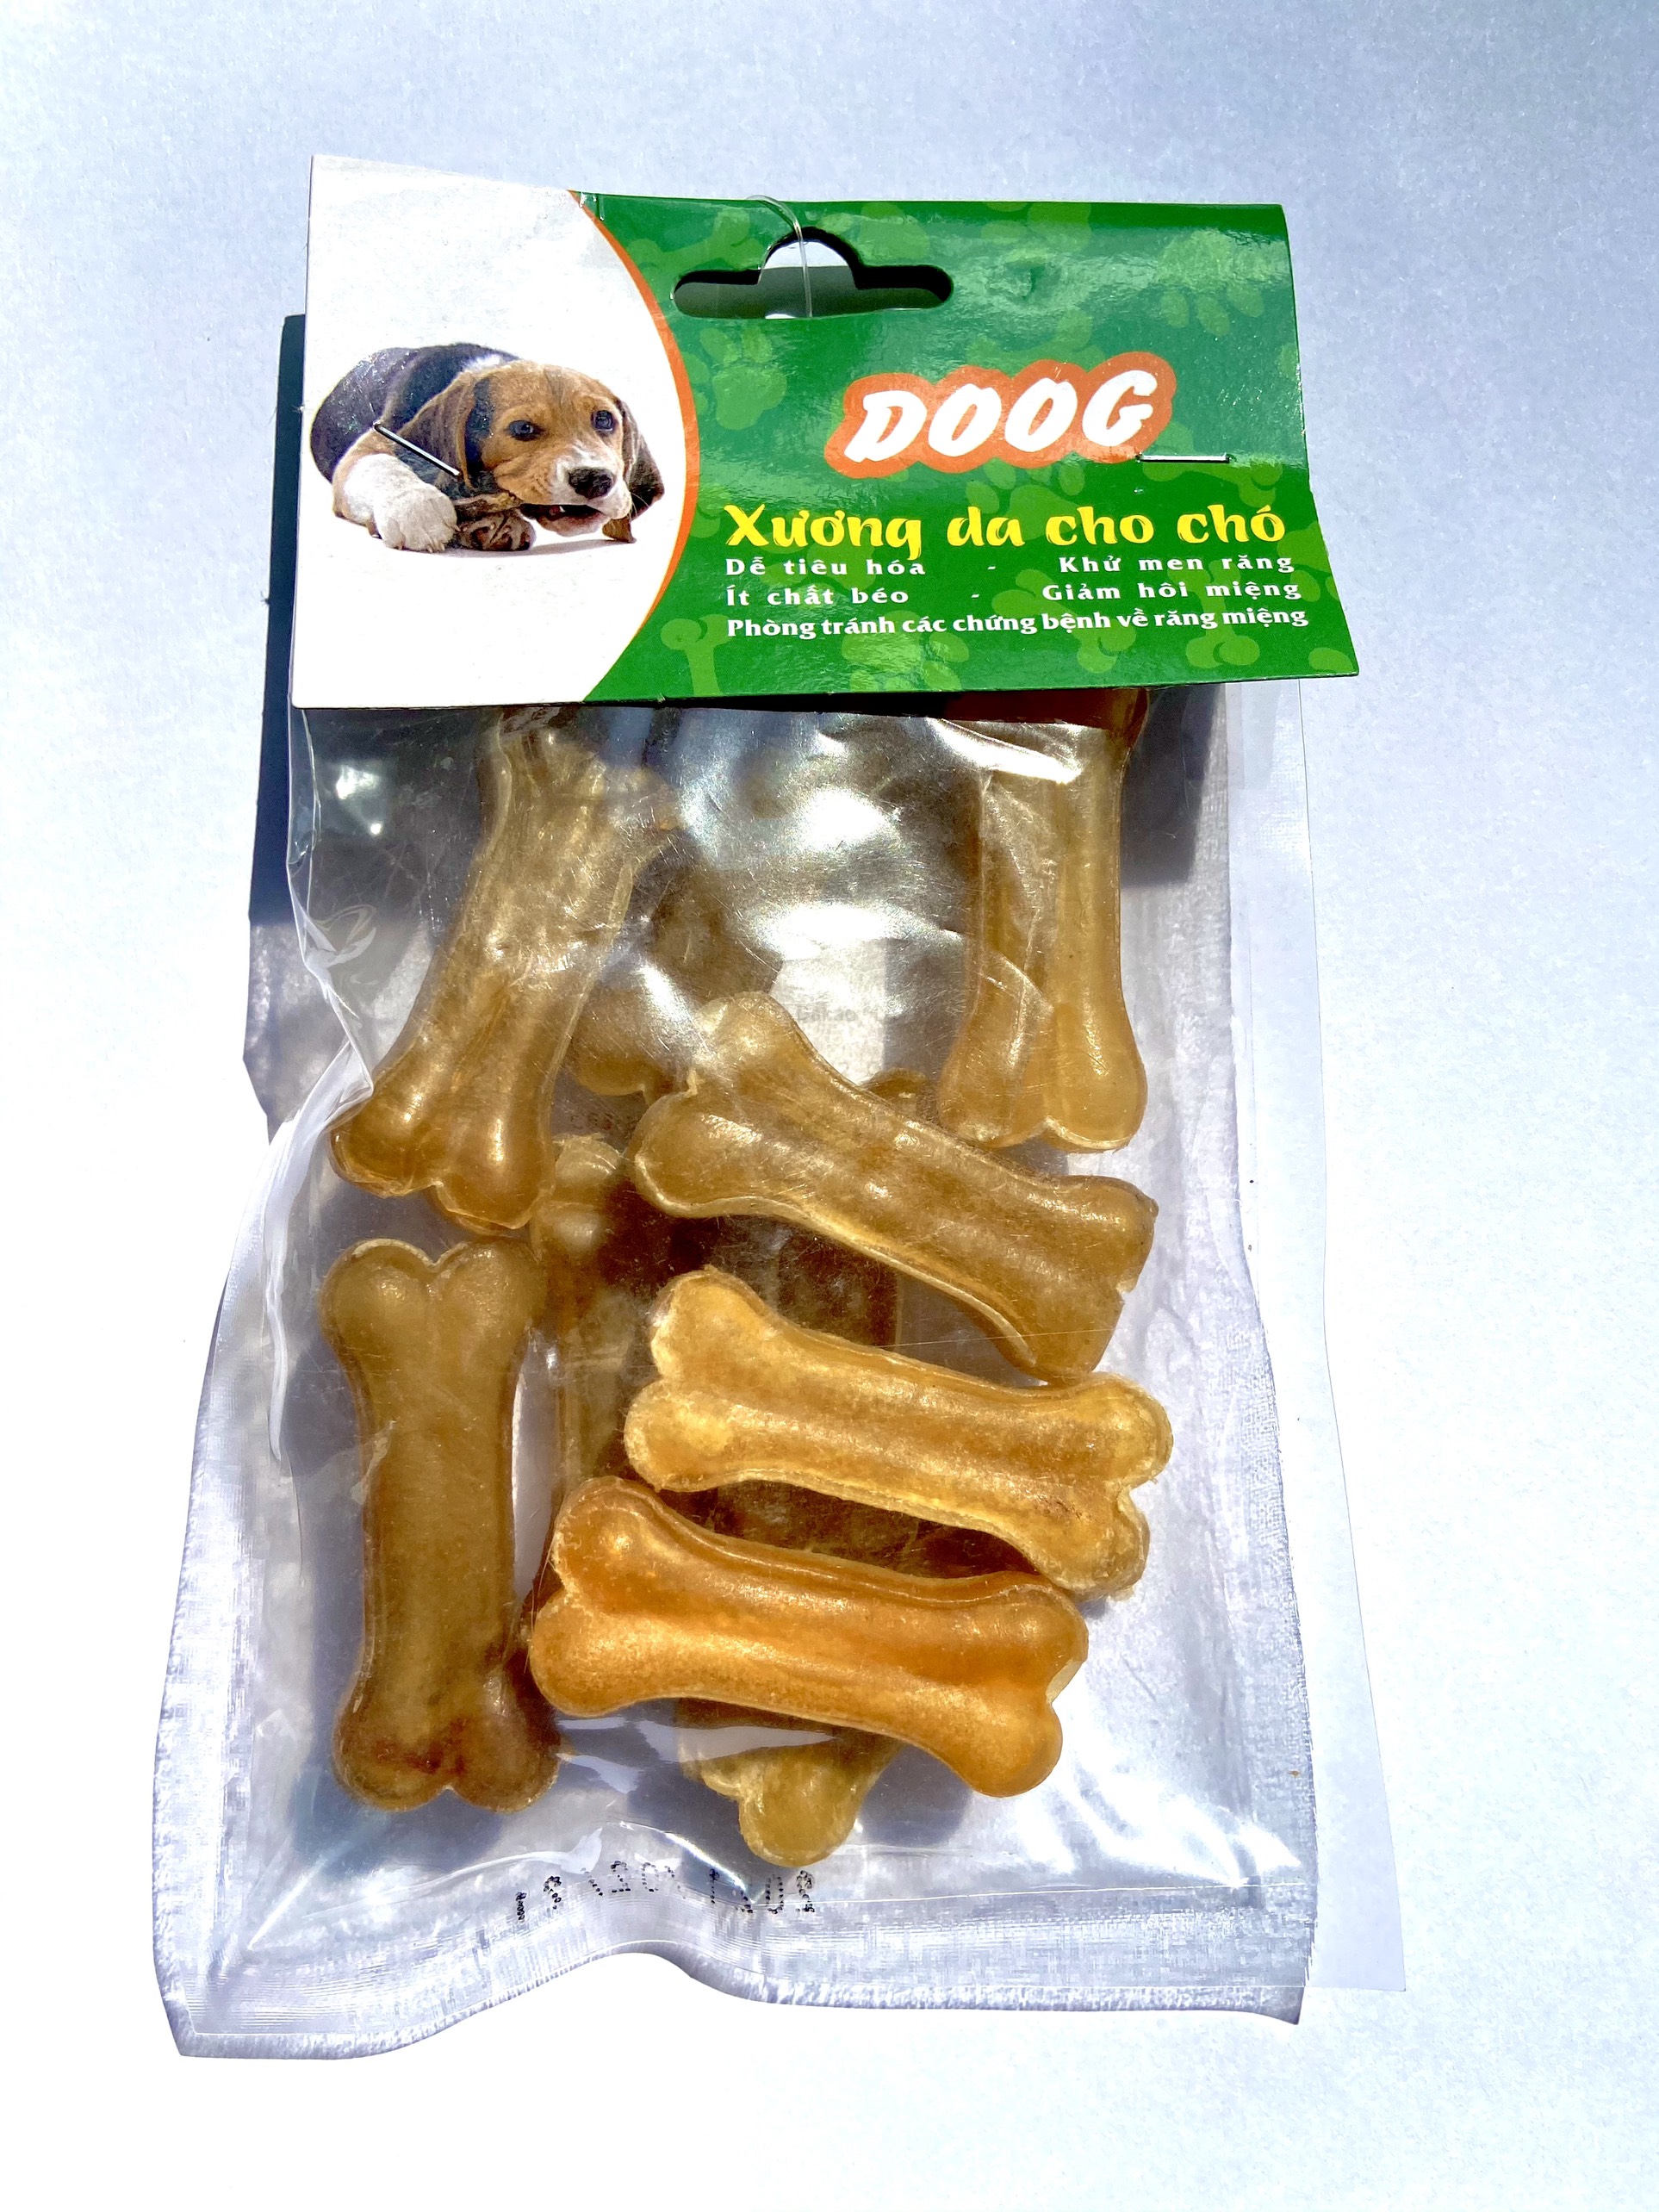 Đồ chơi cho chó XƯƠNG DA BÒ , Xương gặm cung cấp can xi, làm sạch răng chó